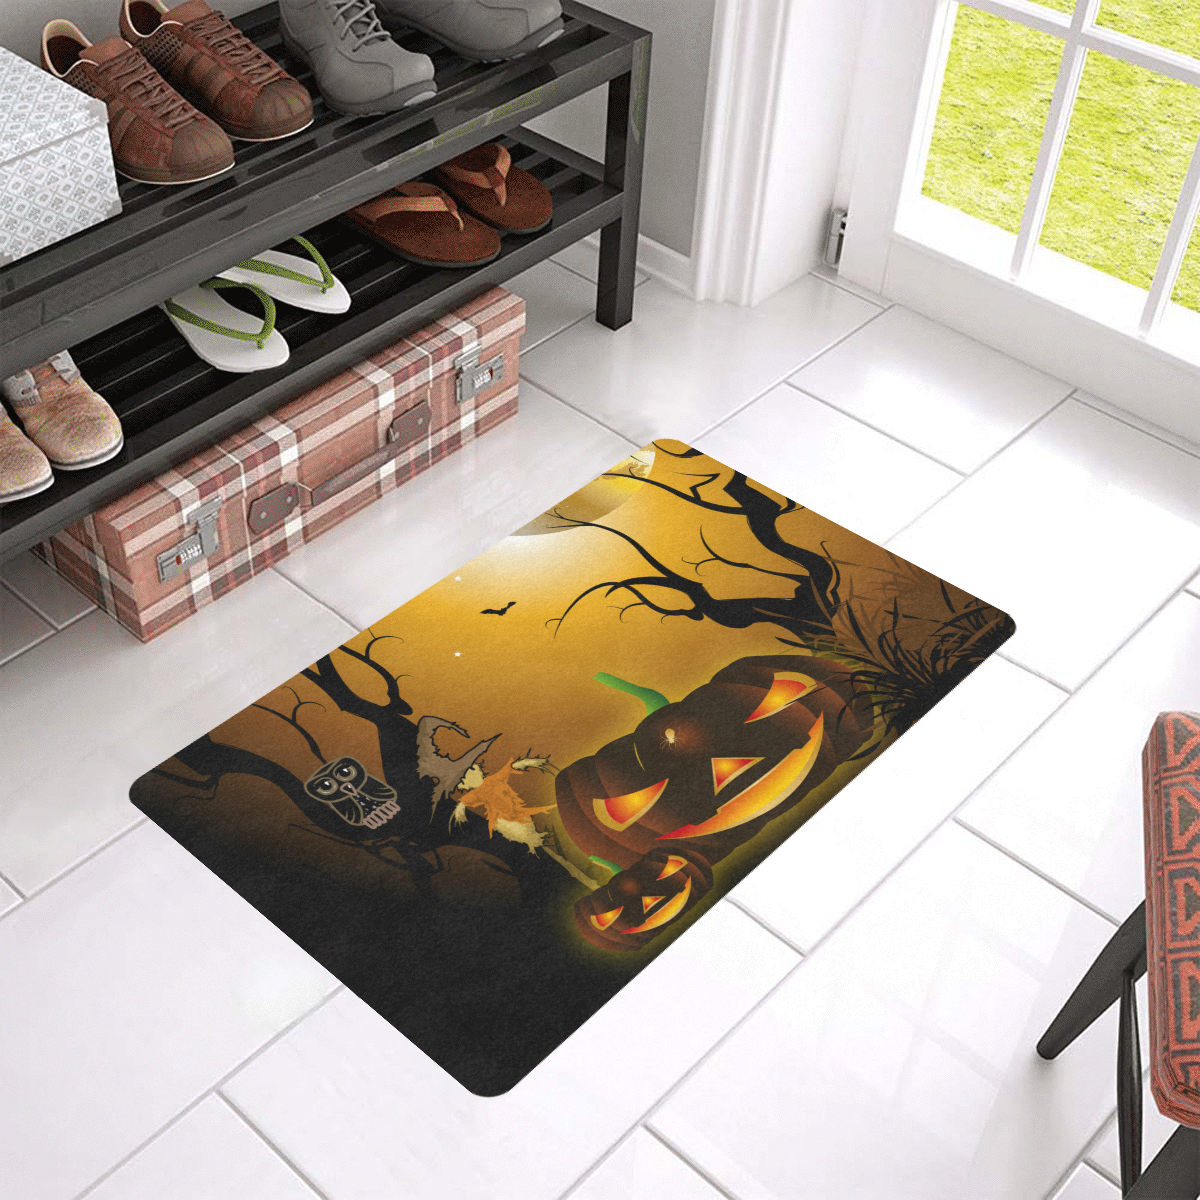 Halloween, Funny scarecrow with punpkin Doormat 24"x16" (Black Base)